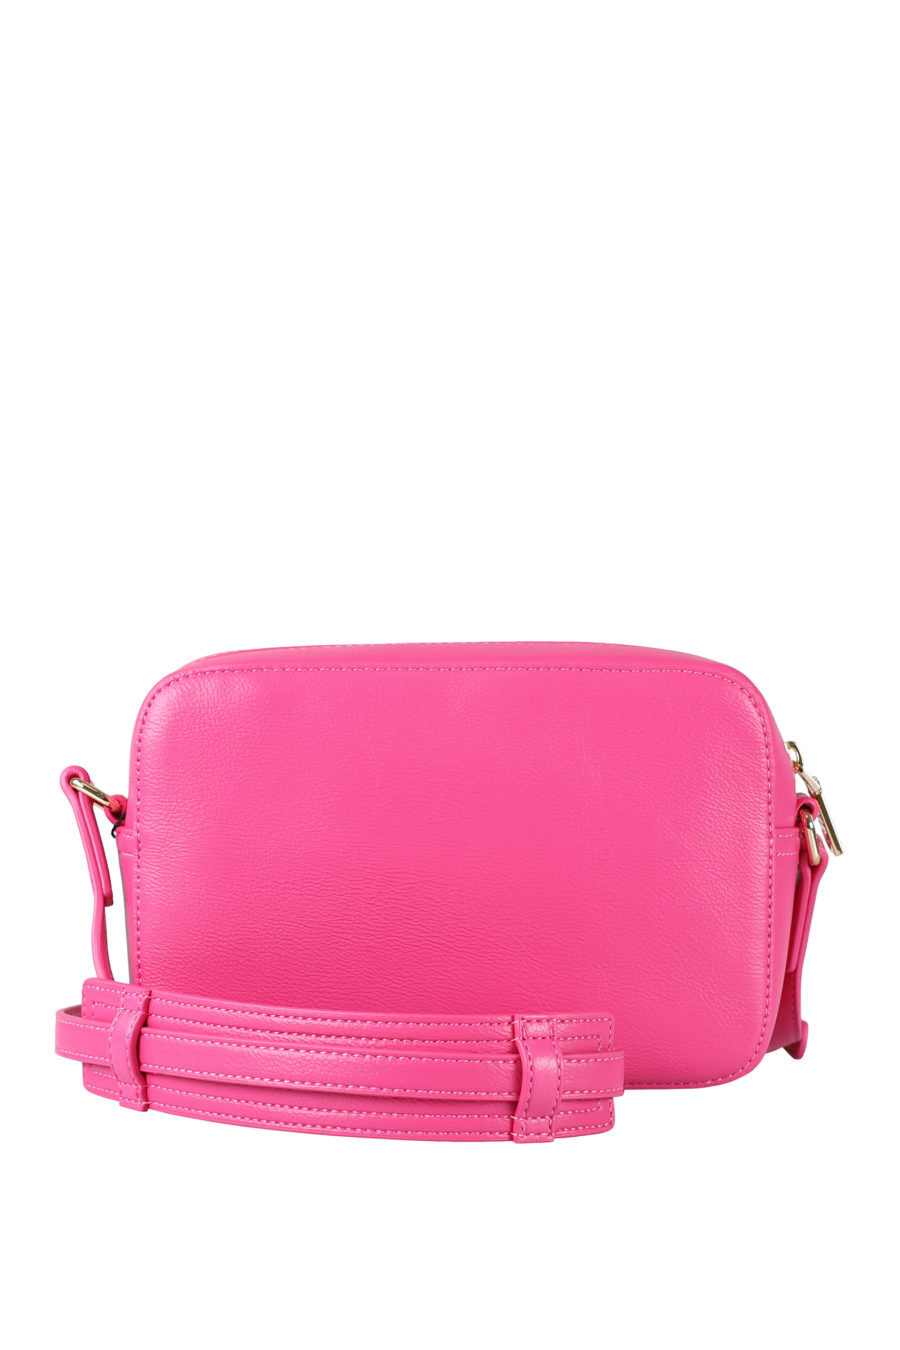 Bolso rosa "camera bag" con logo bordado - IMG 1567